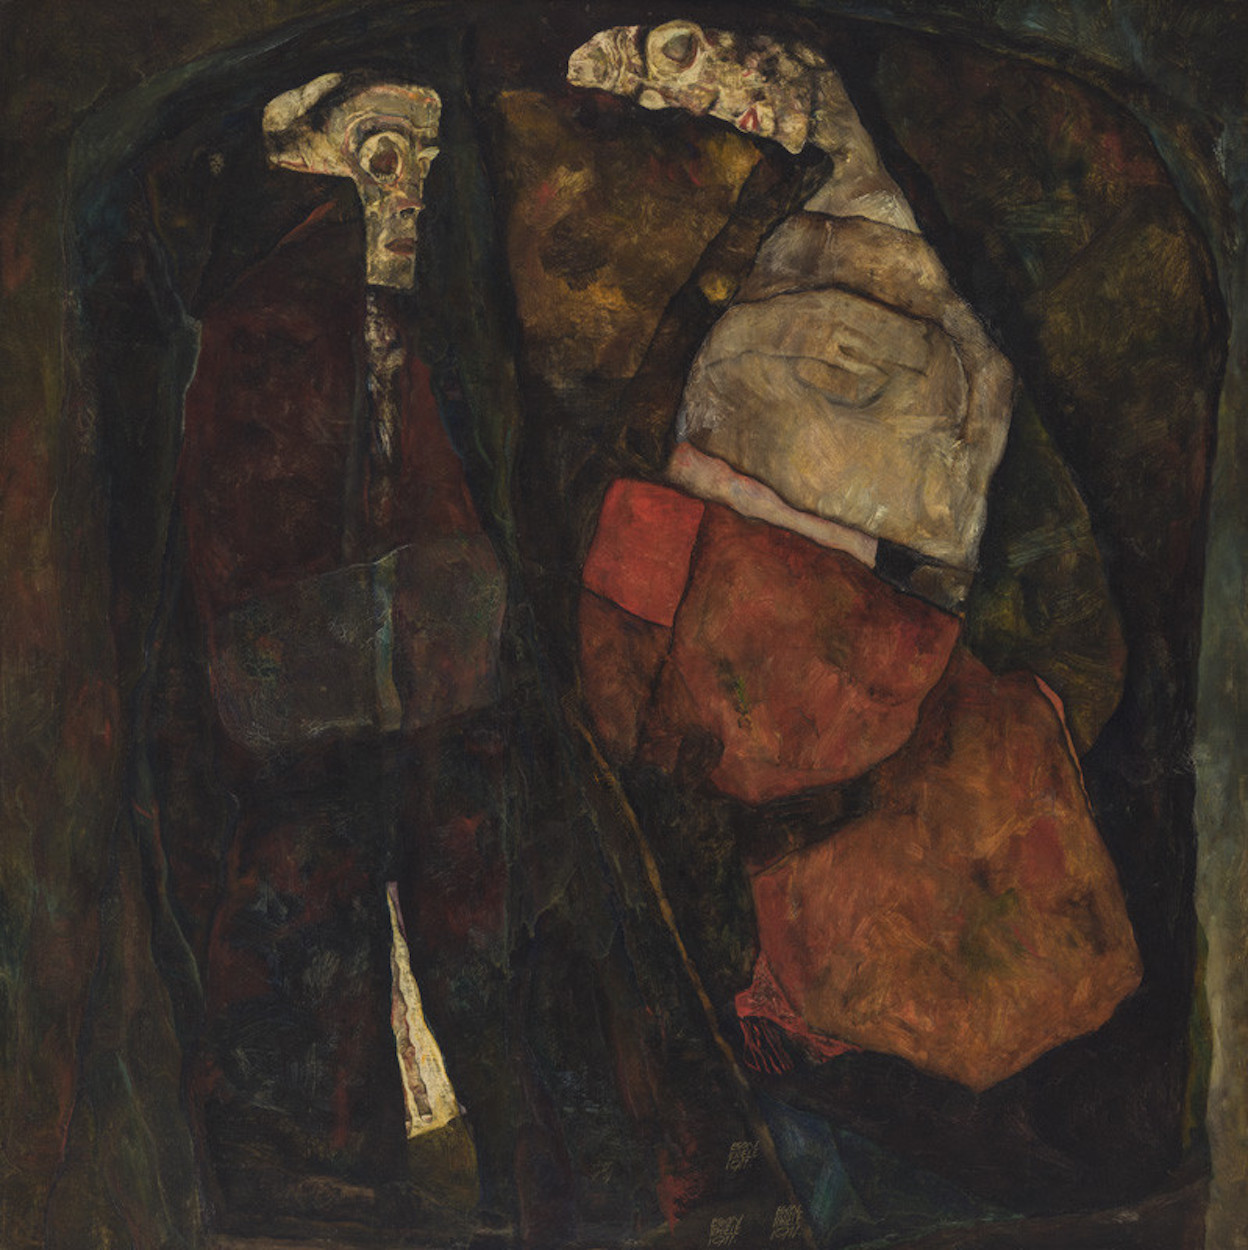 Femeie însărcinată și moarte (Mamă și moarte) by Egon Schiele - 1911 - 100 x 100 cm 